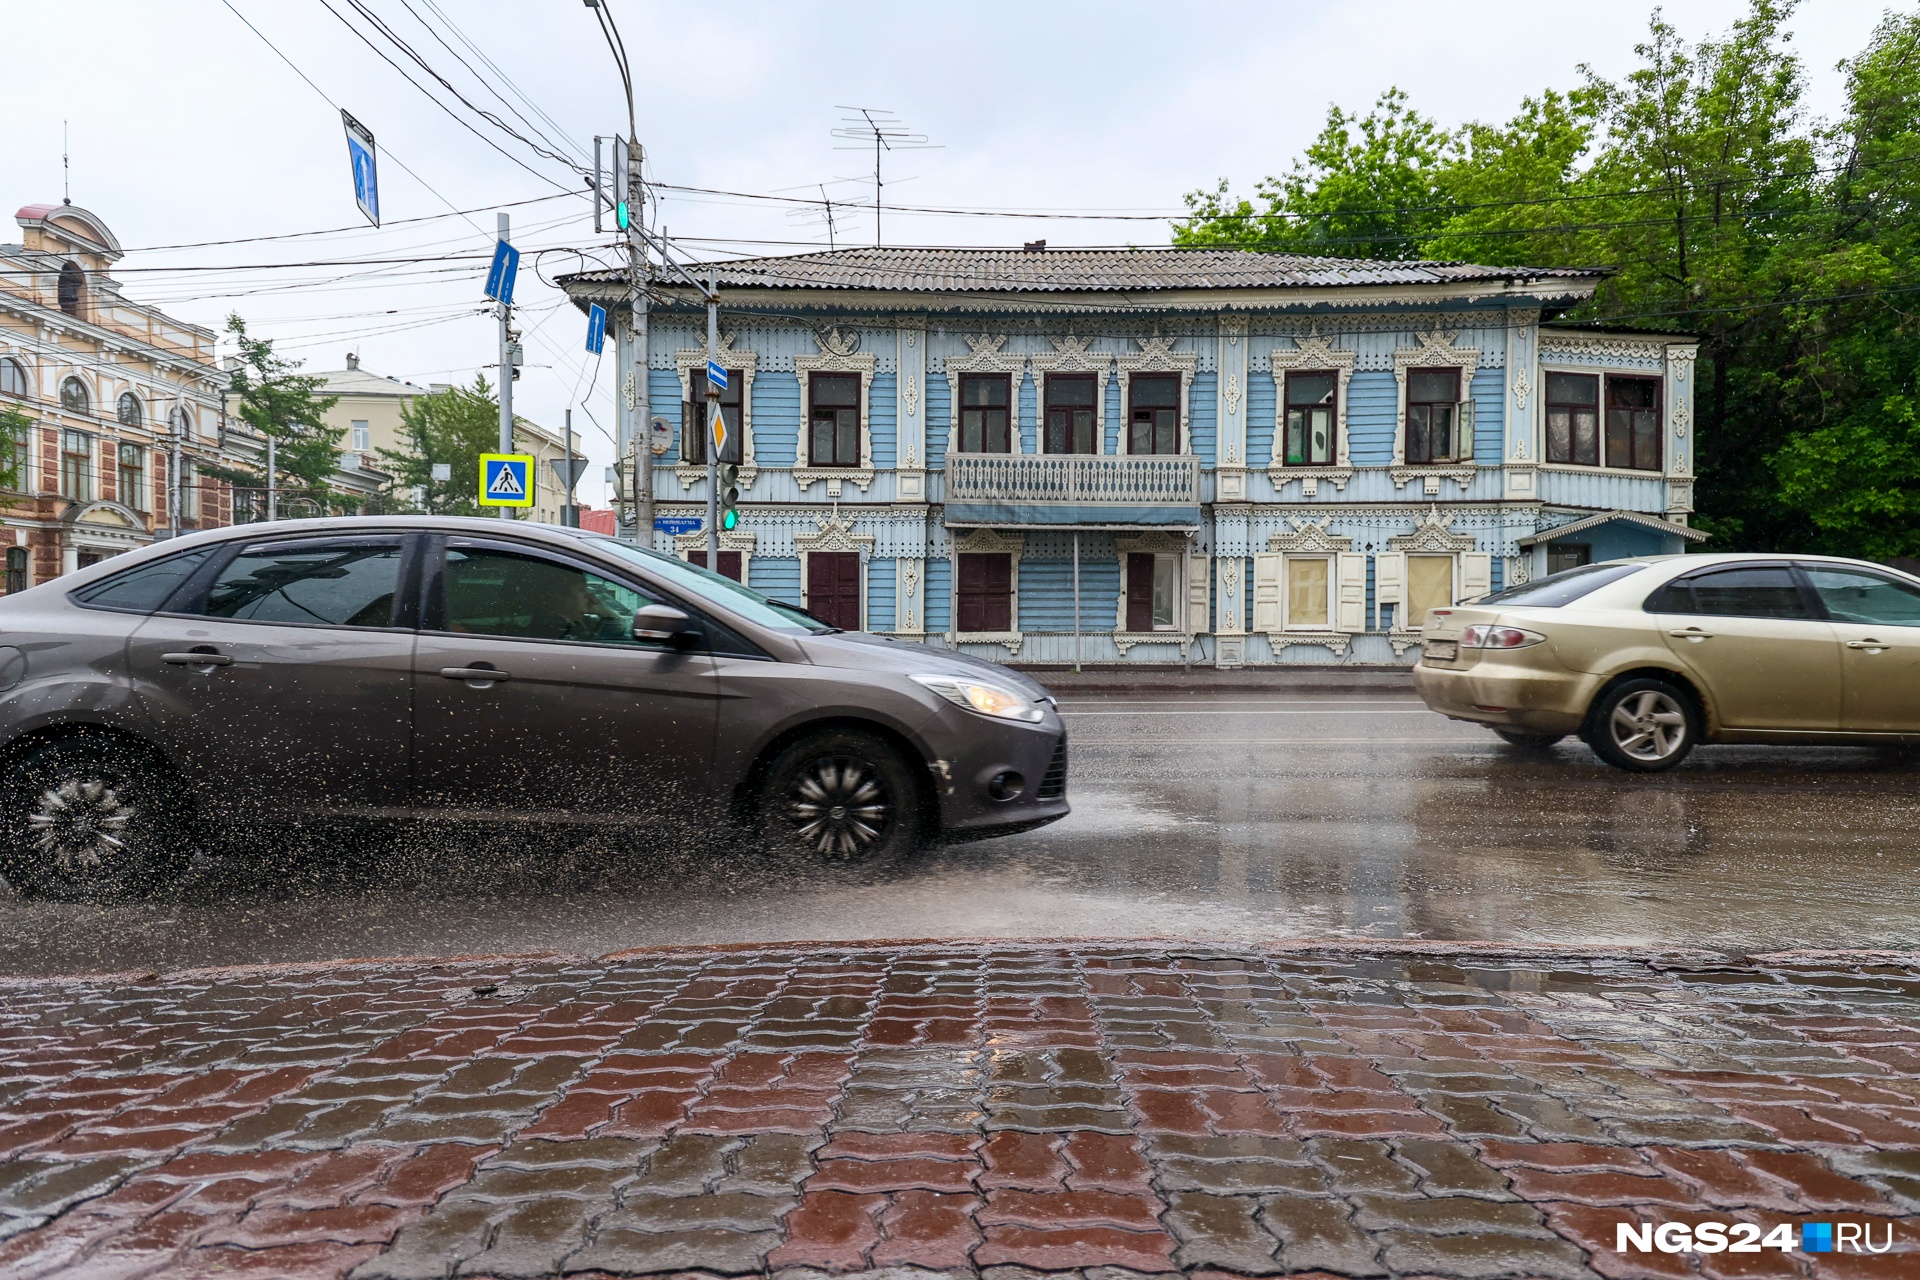 Сколько воды откачали коммунальщики с улиц Красноярска за вчерашний день — в одной картинке